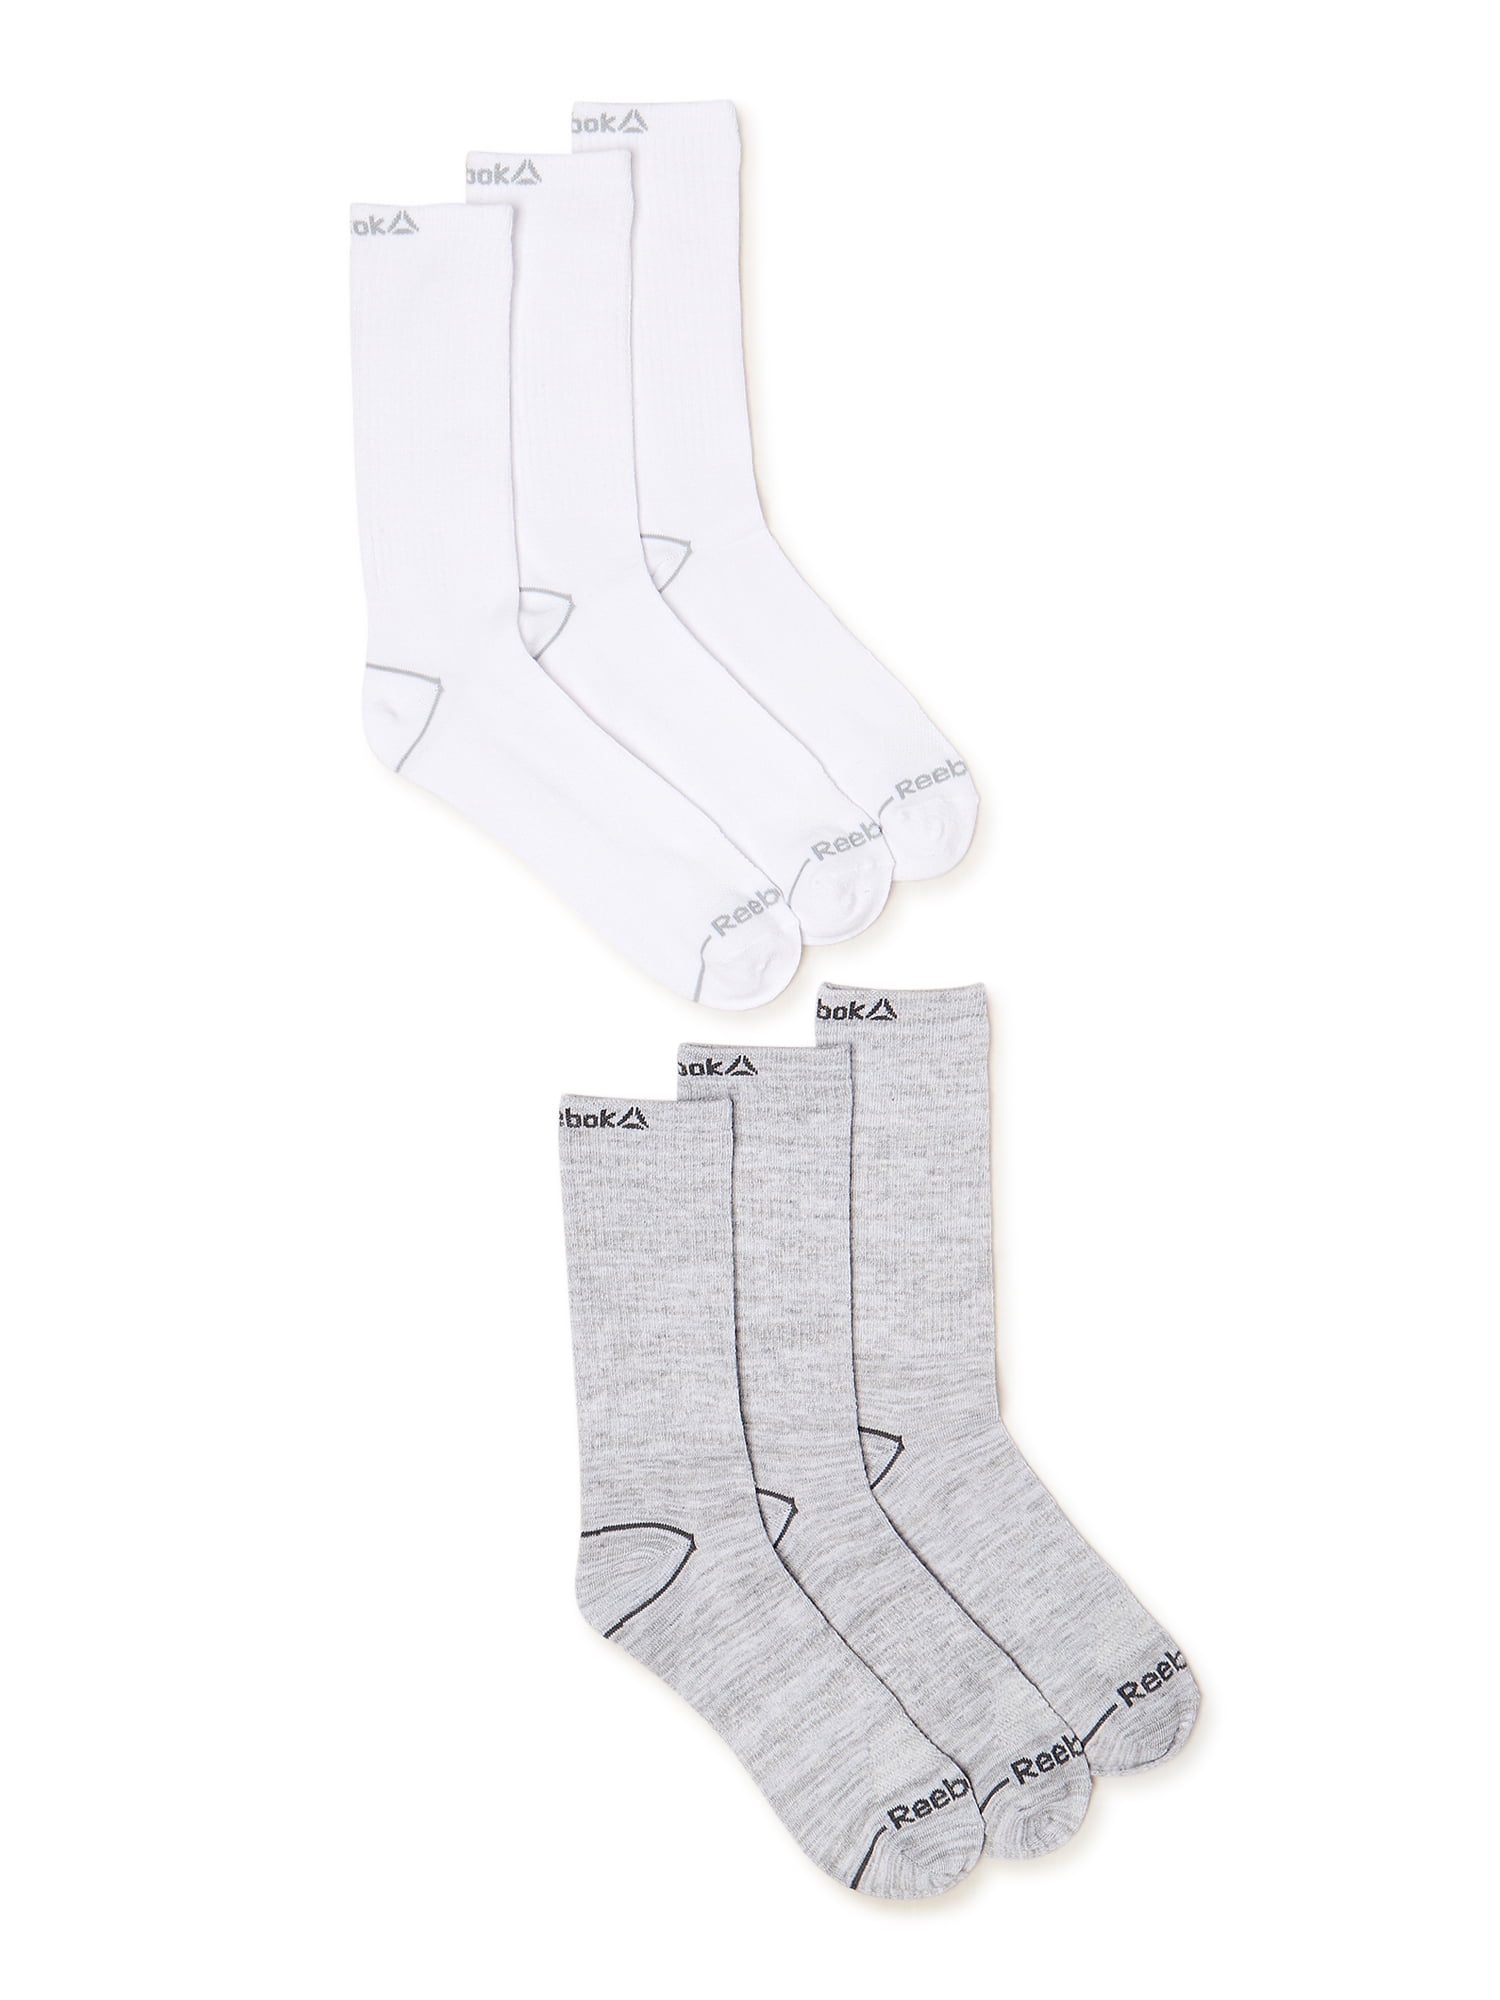 lufthavn Deqenereret Hævde Reebok Men's Pro Series Flatknit Crew Socks, 6-Pack, Sizes 6-12 -  Walmart.com